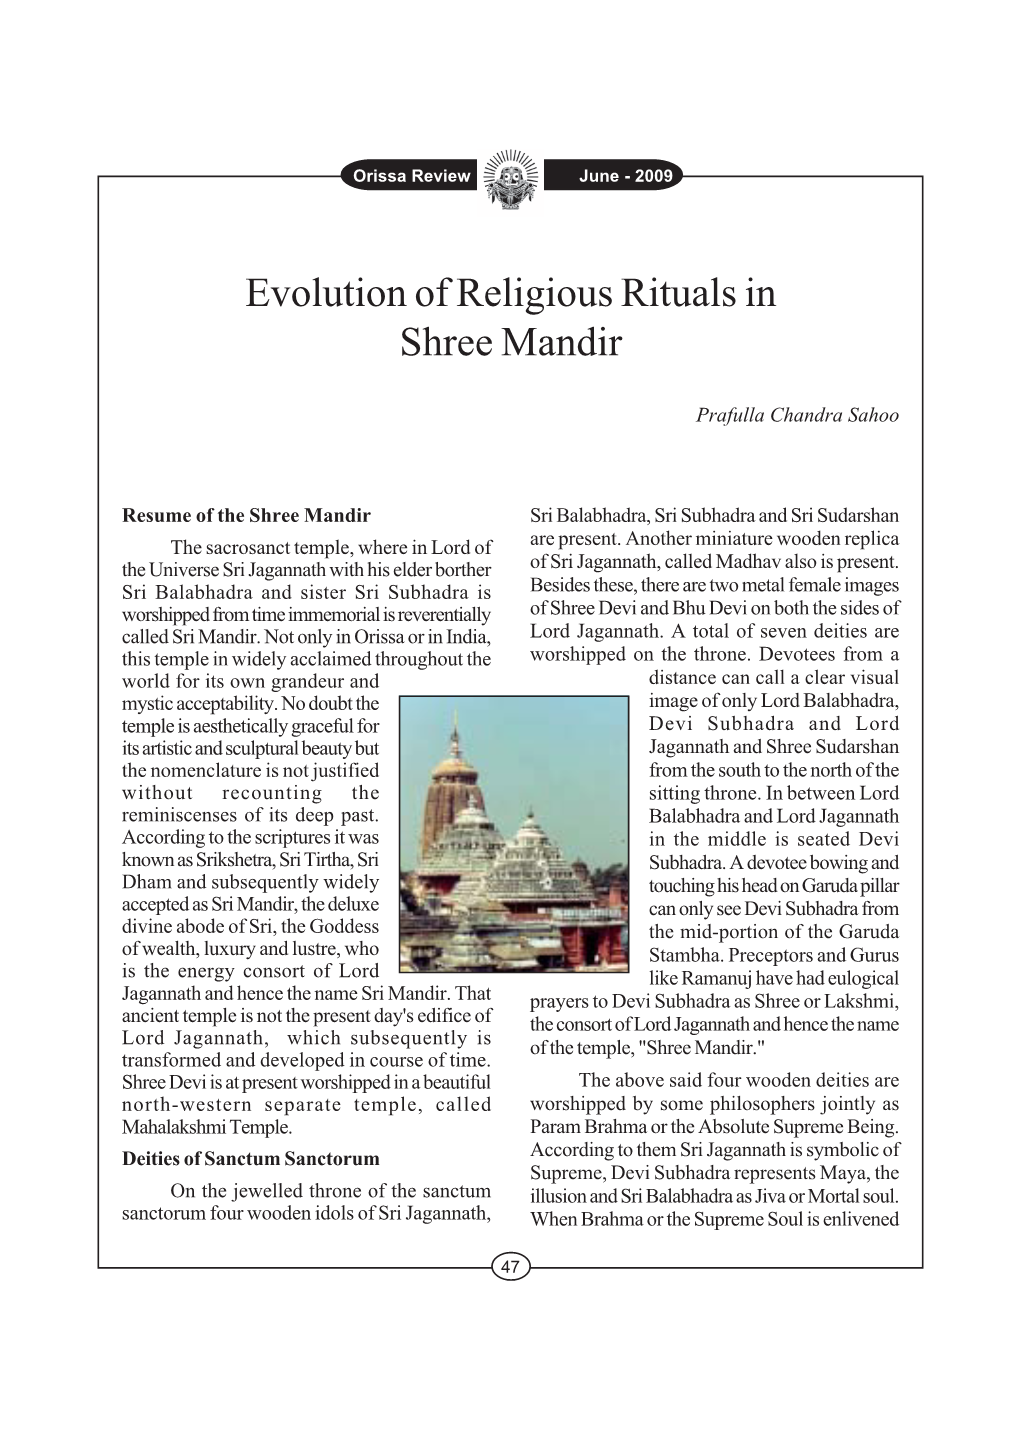 Evolution of Religious Rituals in Shree Mandir